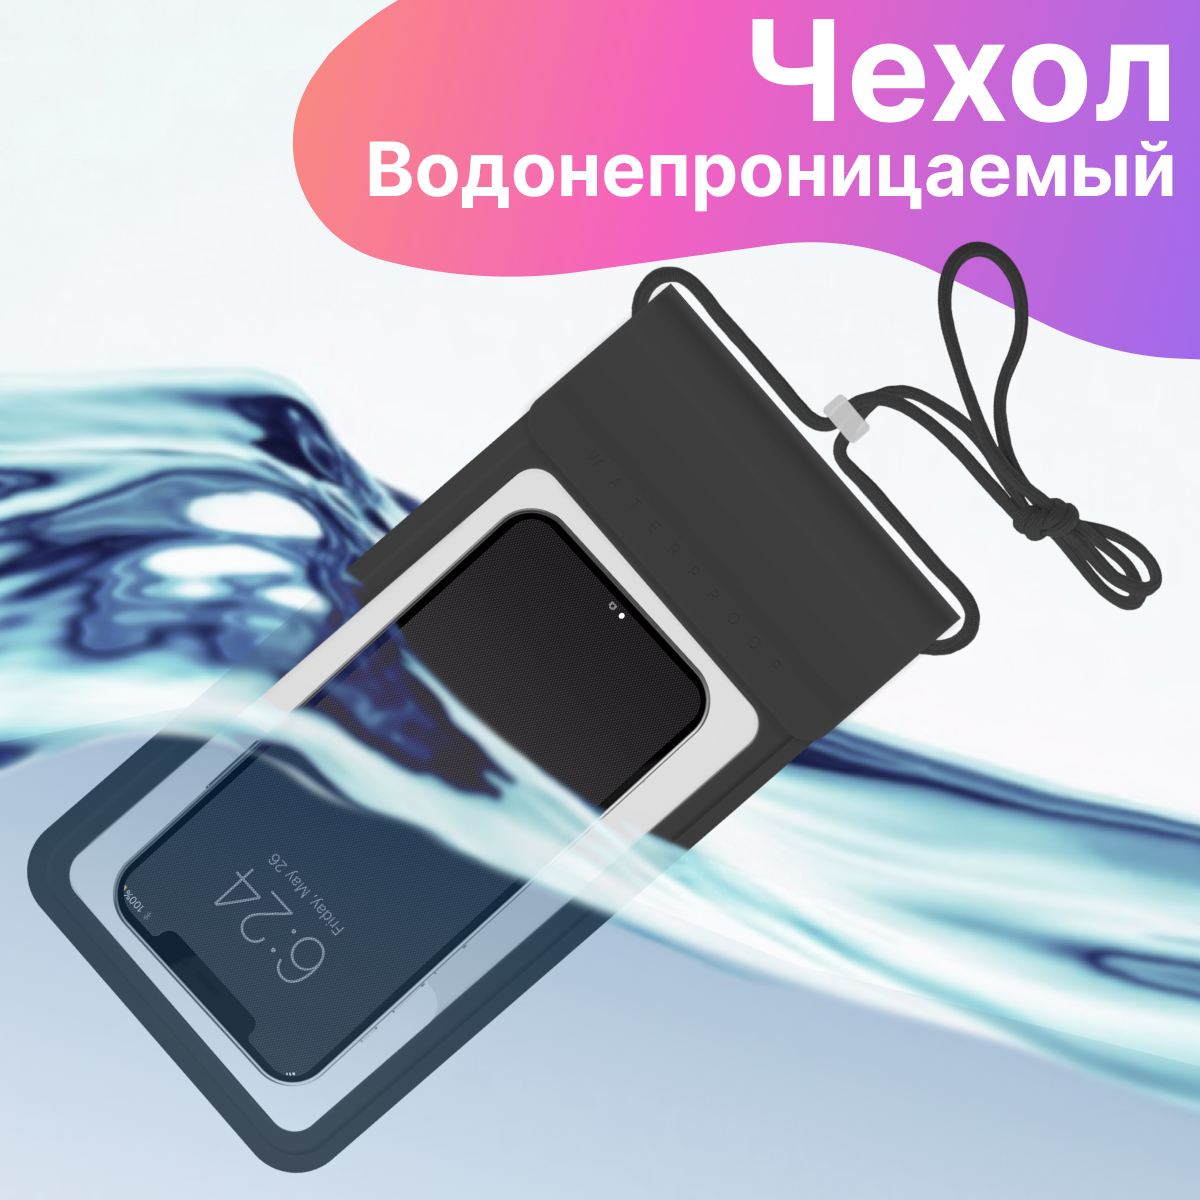 Универсальный водонепроницаемый кейс для телефона со шнурком / Непромокаемый чехол для подводной съемки / Аквакейс для смарфона герметичный (Черный)